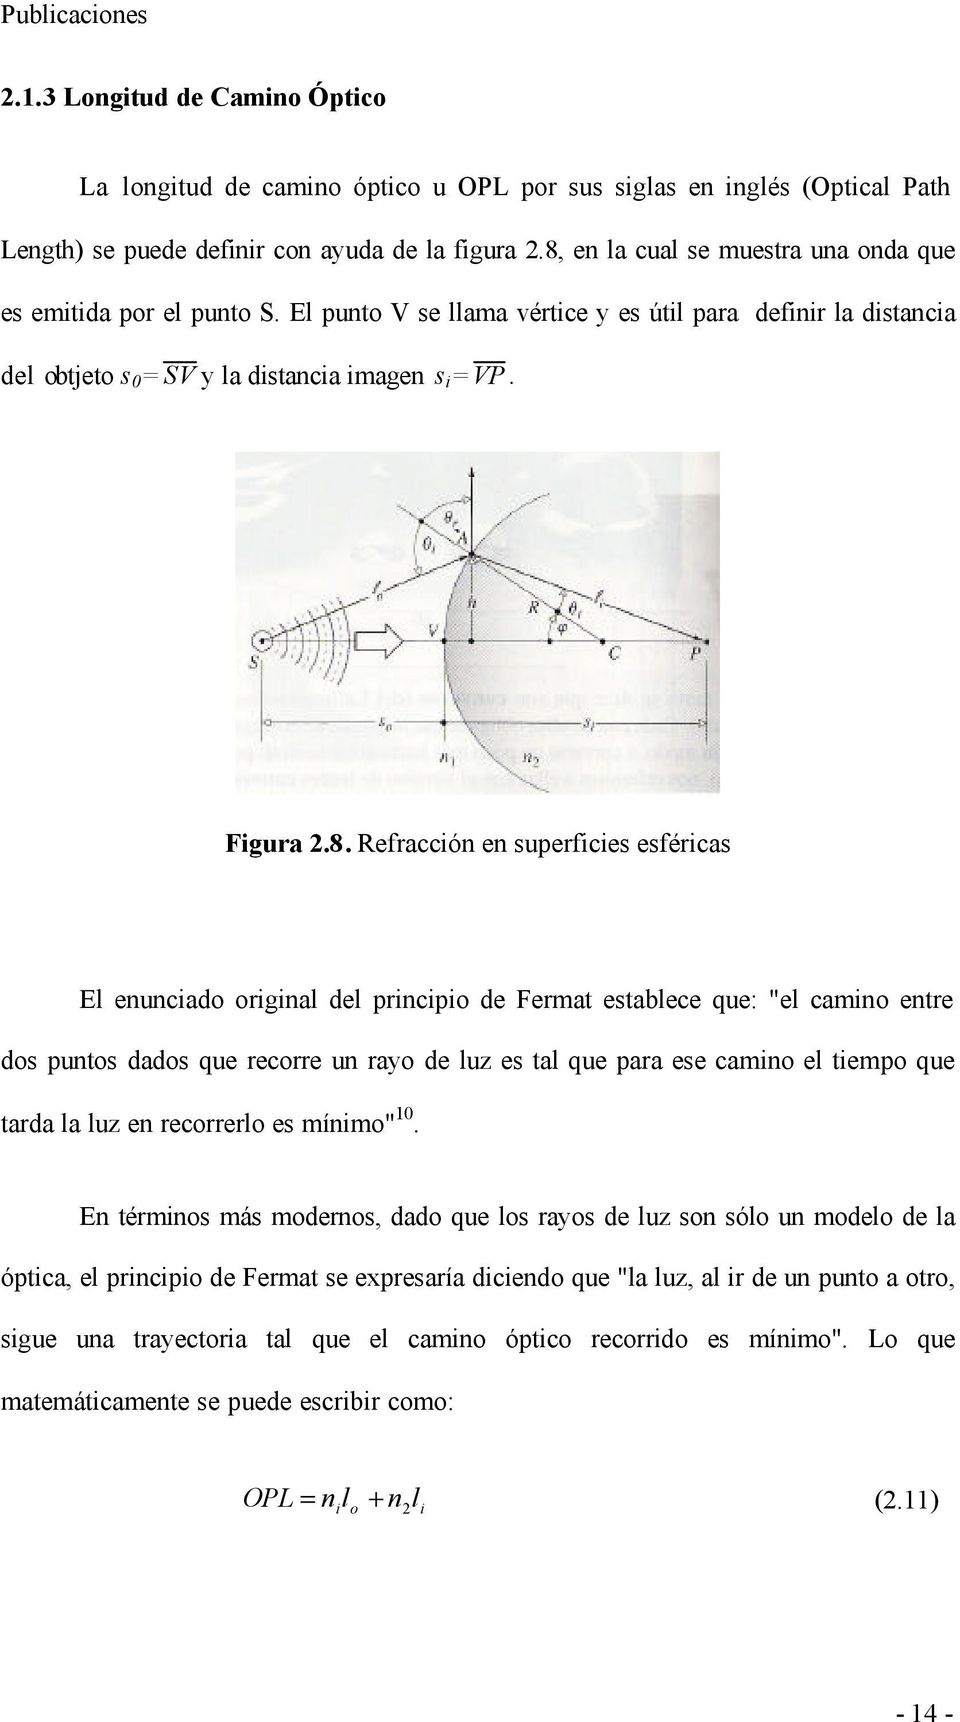 Refracción en superficies esféricas El enunciado original del principio de Fermat establece que: "el camino entre dos puntos dados que recorre un rayo de luz es tal que para ese camino el tiempo que